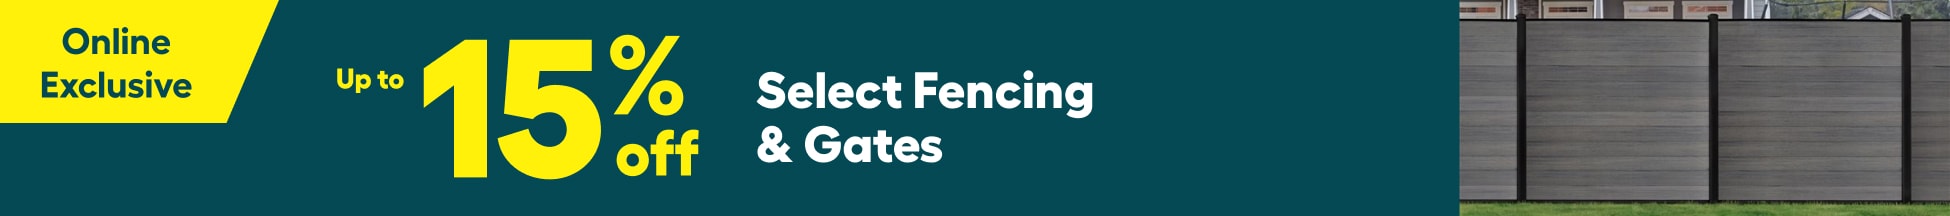 Fencing & gates